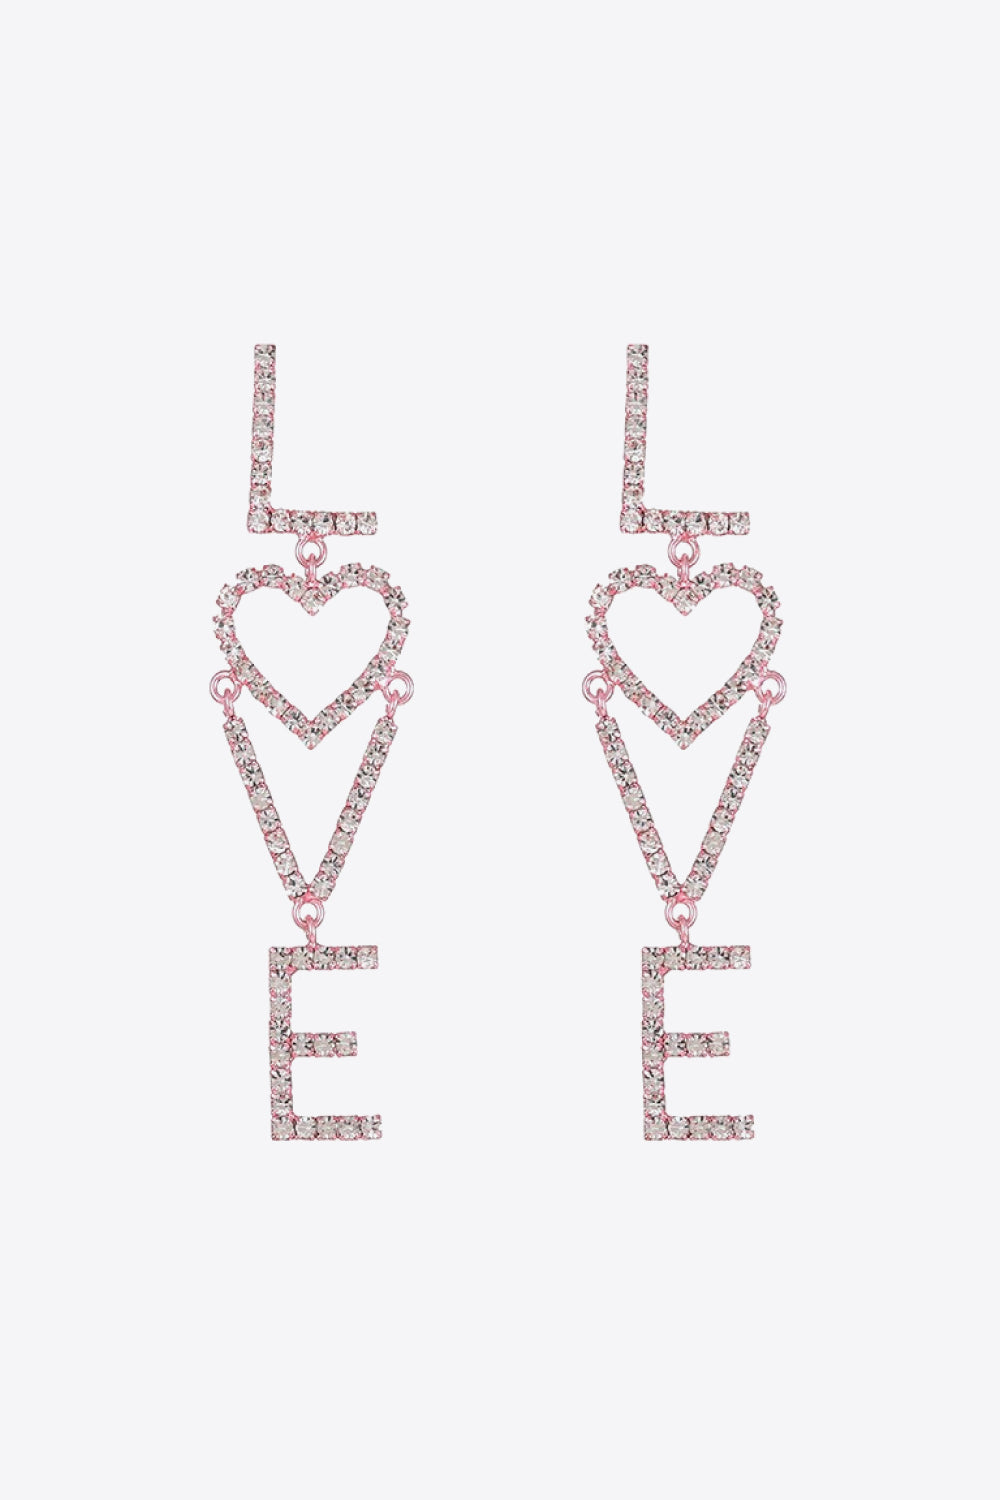 LOVE Glass Stone Zinc Alloy Earrings - Earrings - FITGGINS